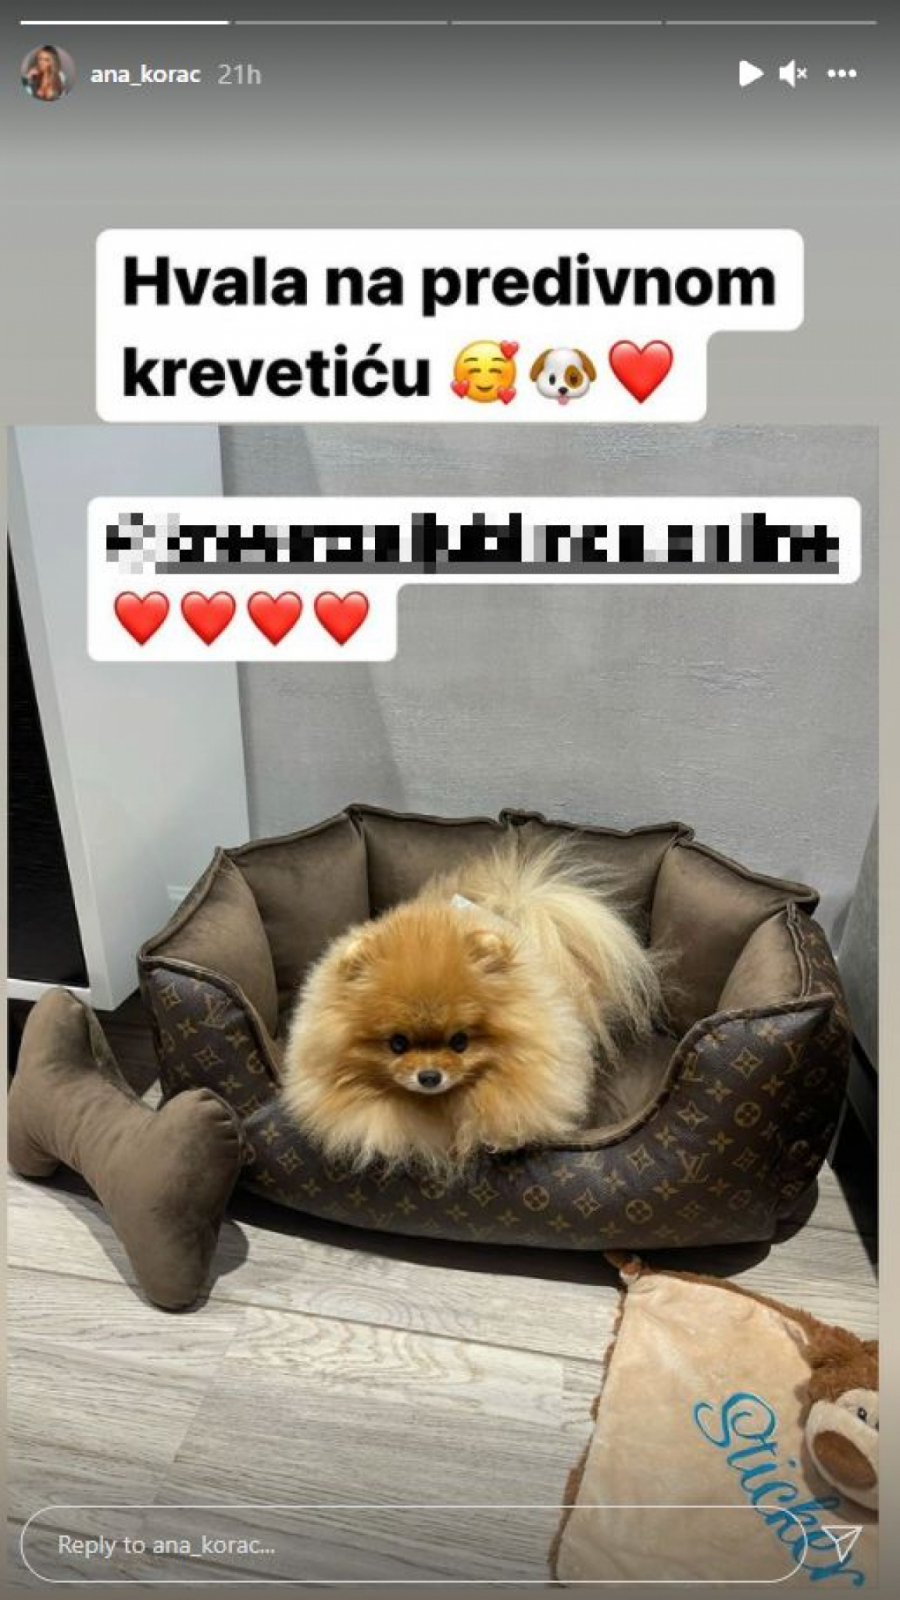 SAMO BRENDIRANE STVARI! Pas Ane Korać uživa u luksuzu, pogledajte šta mu je sad obezbedila!